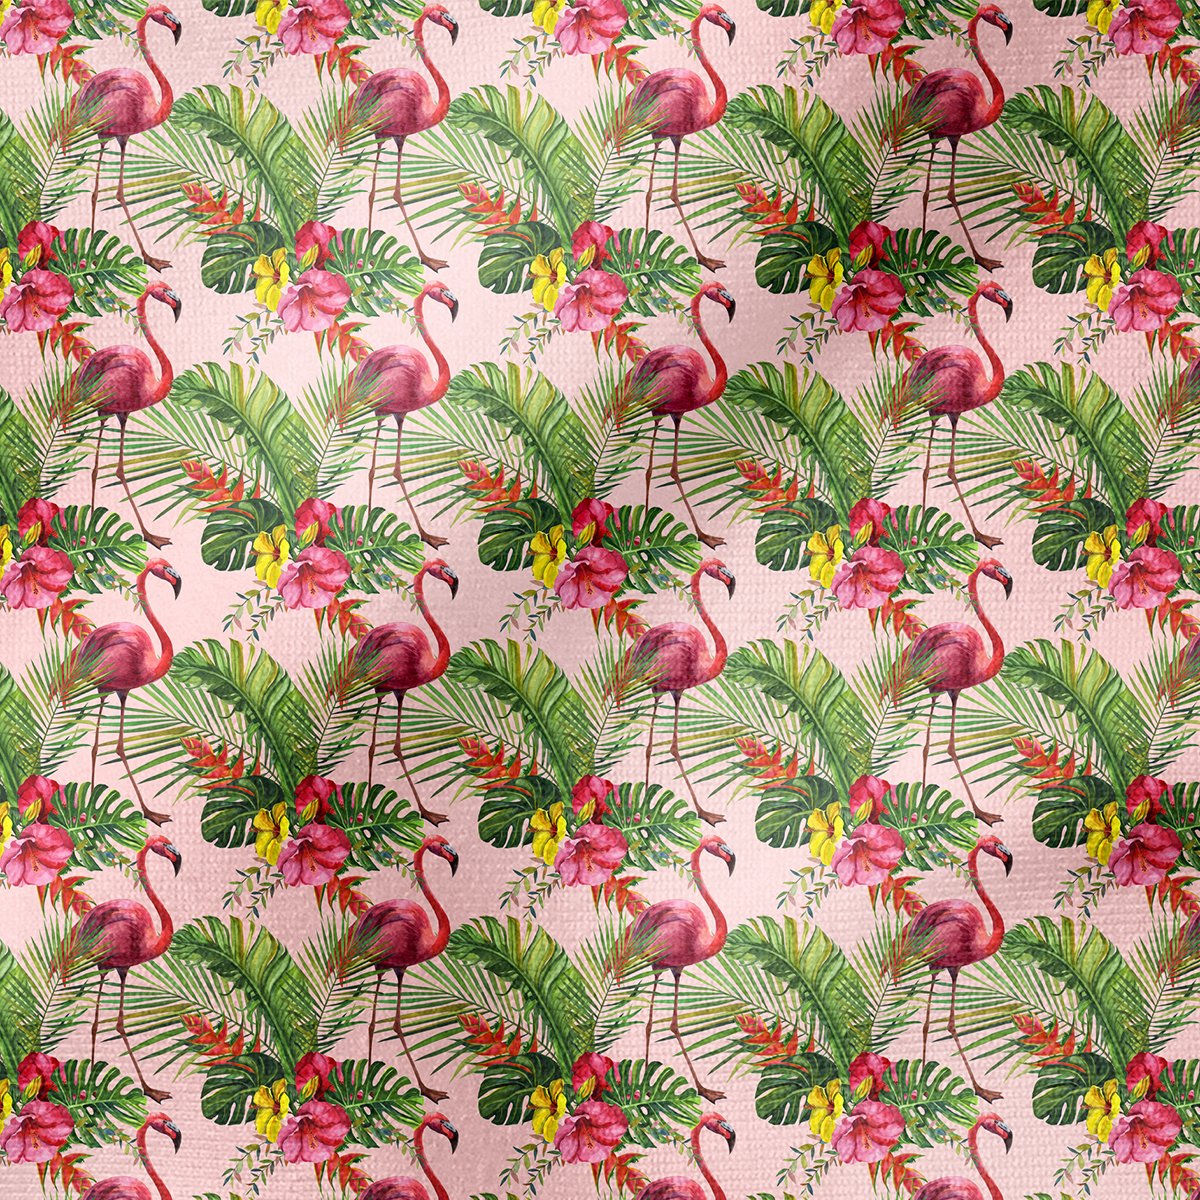 Tropikal Serisi-Devetabanı Yaprakları Arasında Pembe Flamingo Desenli Kumaş